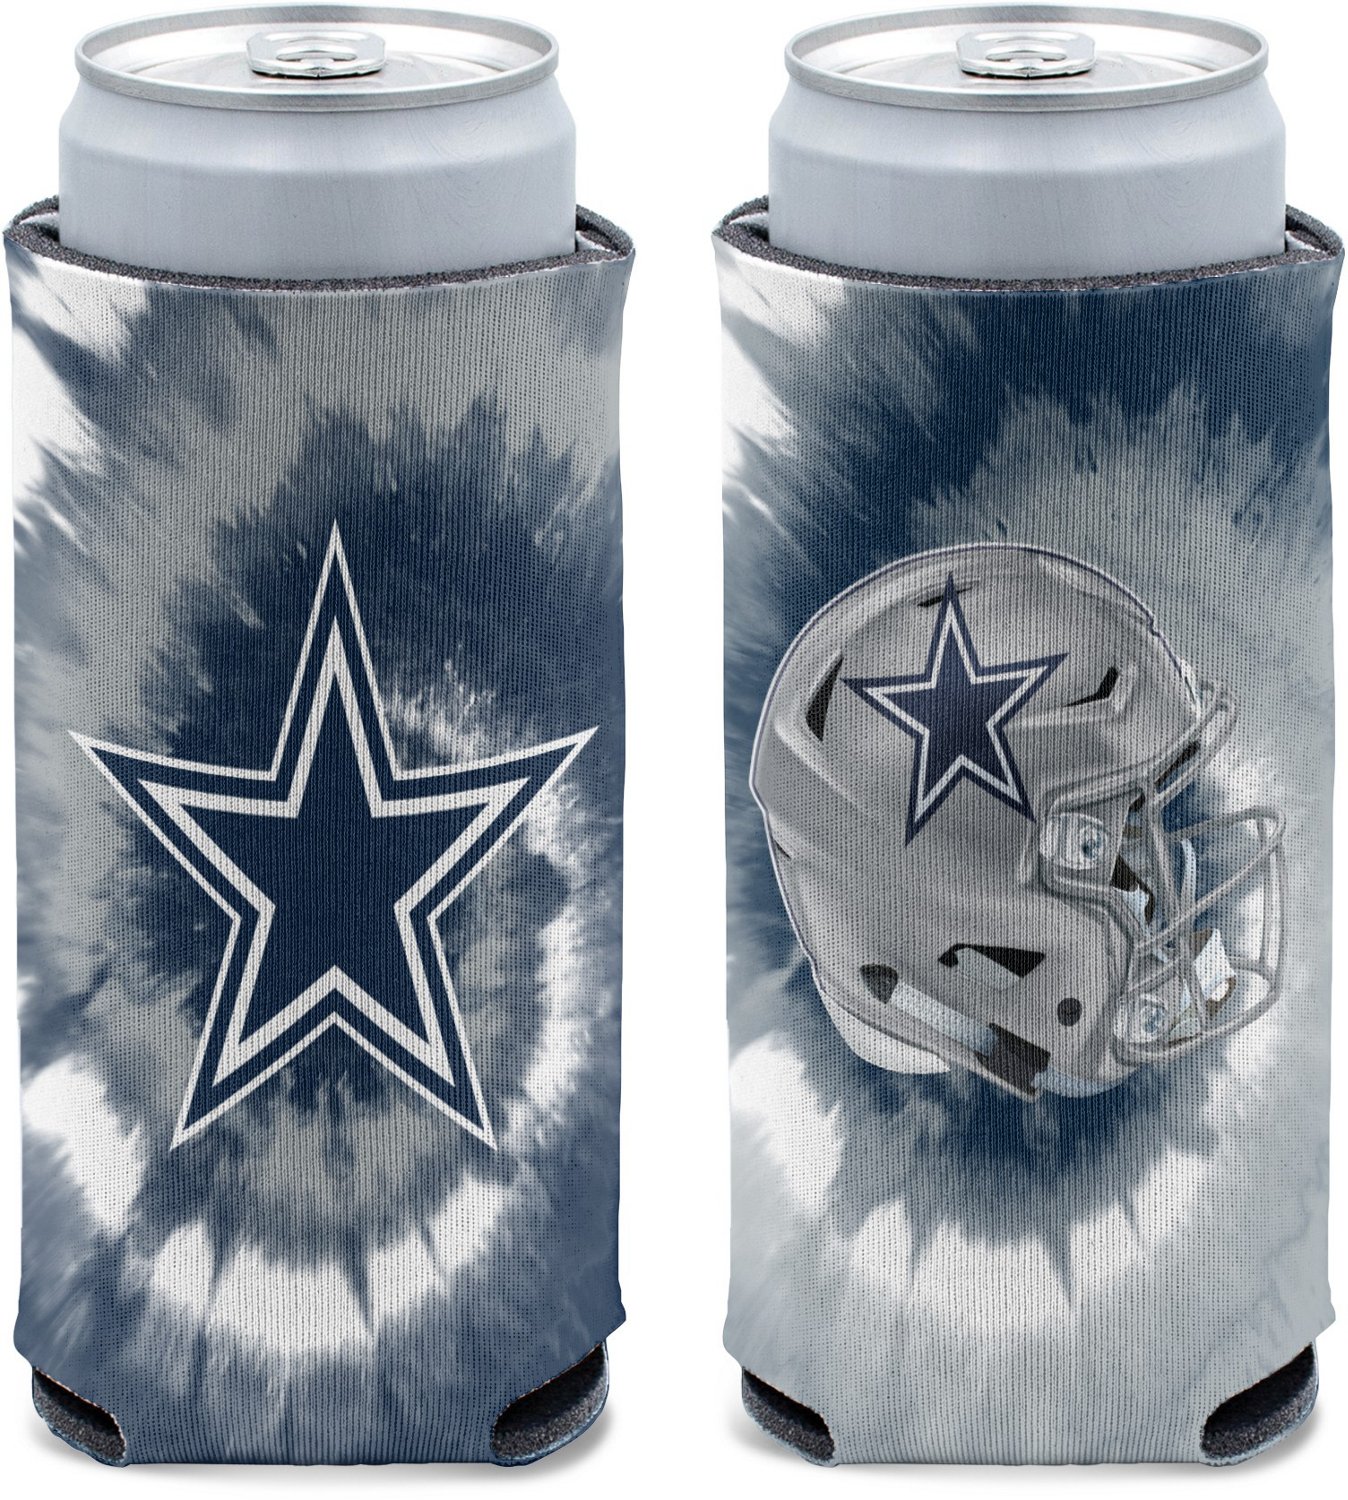 Dallas Cowboys Beer Koozie 